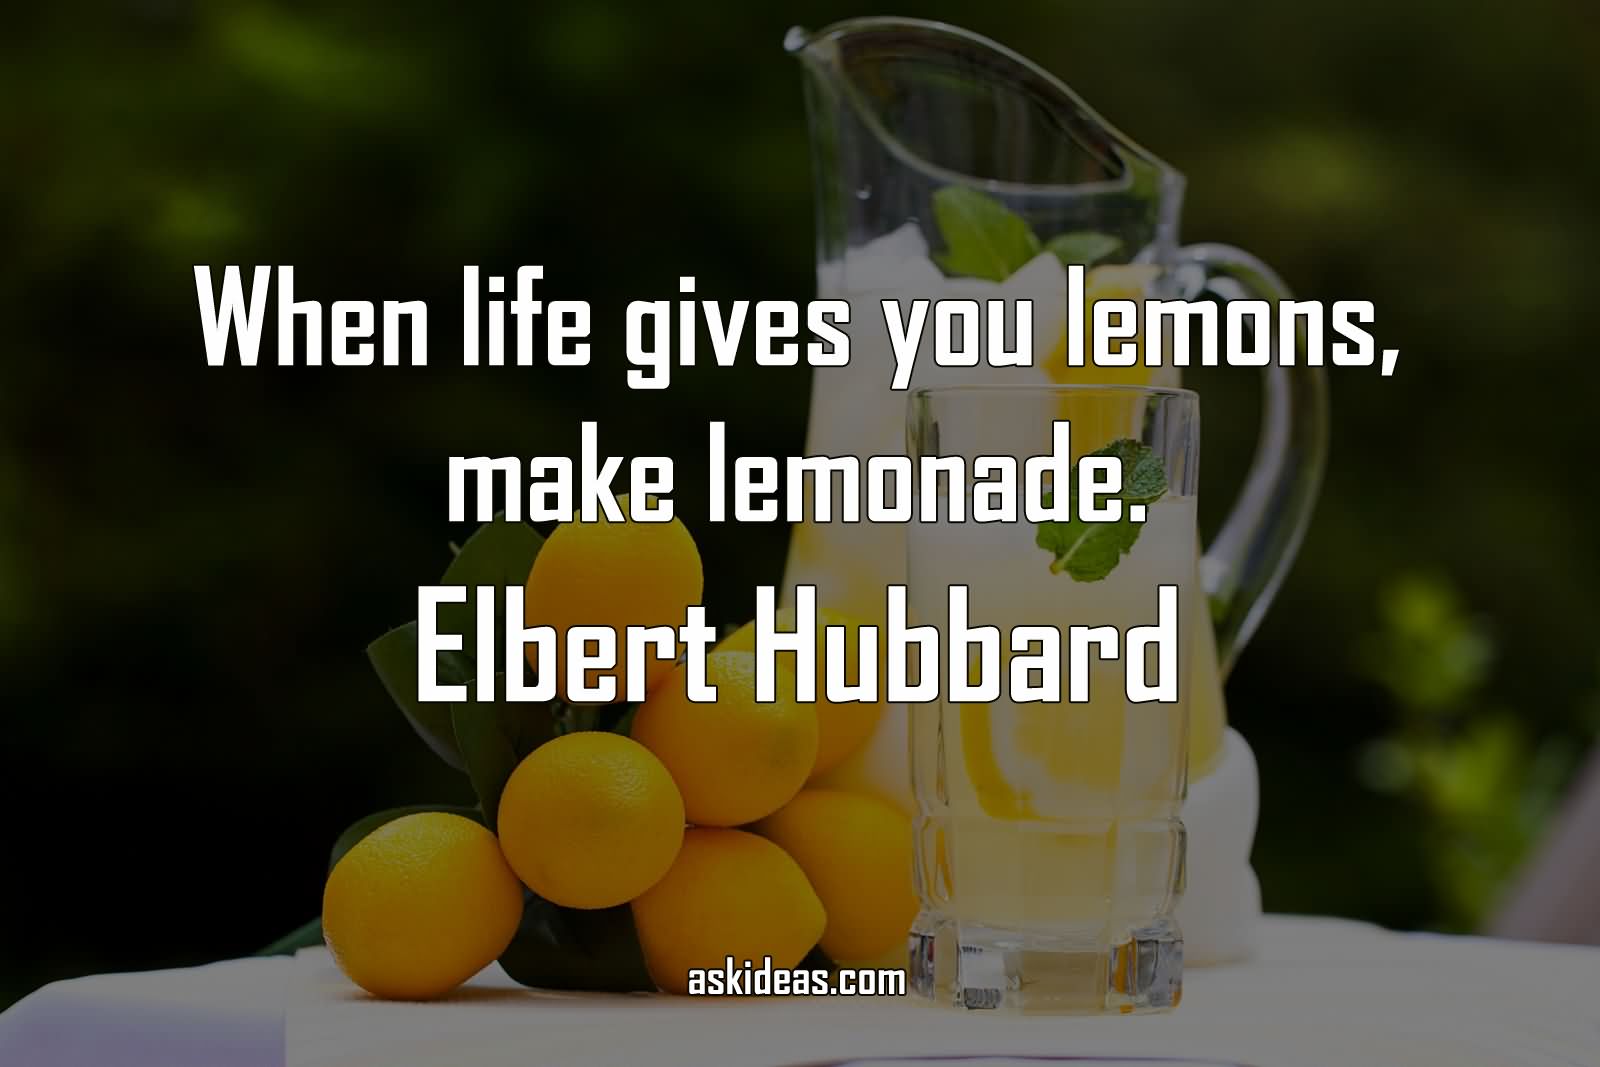 When life gives you lemons, make lemonade